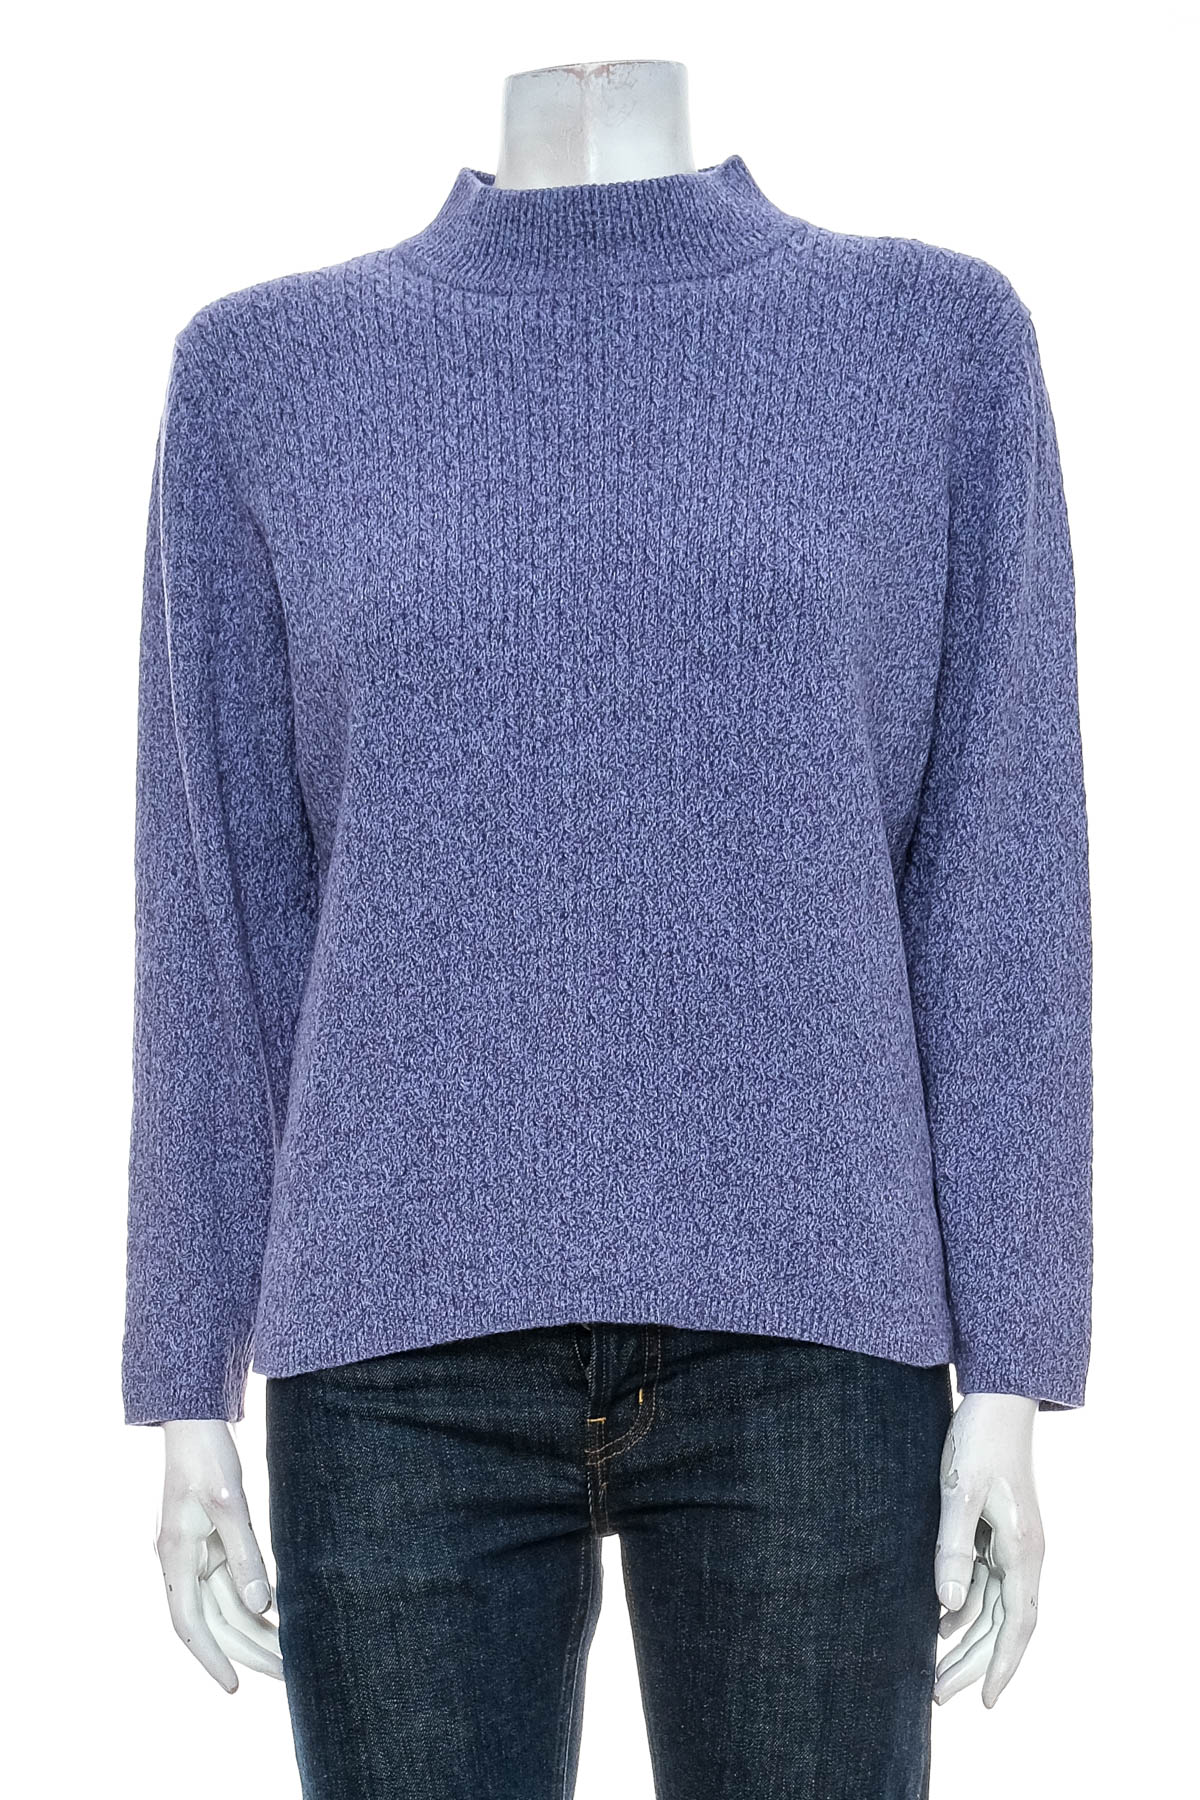 Women's sweater - Karen Scott - 0